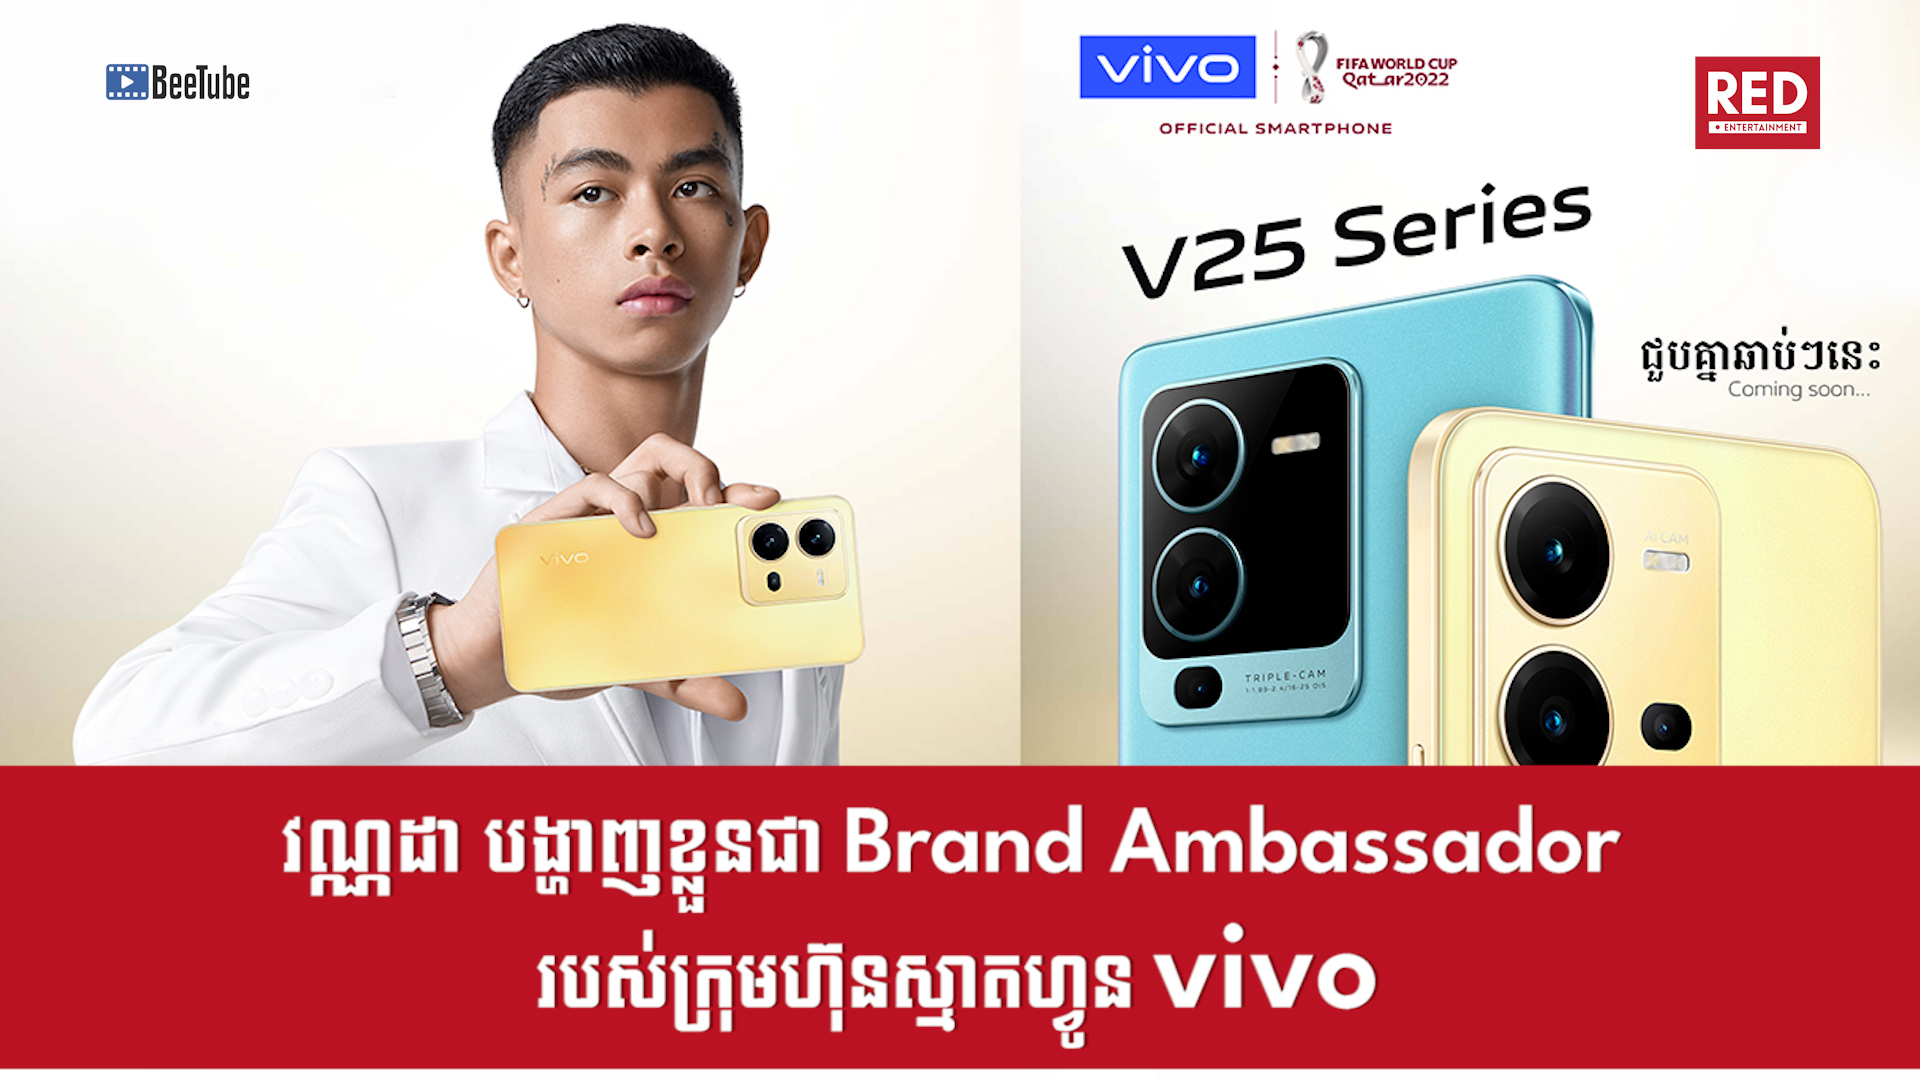 វណ្ណដា បង្ហាញខ្លួនជា Brand Ambassador មួយរូបរបស់ក្រុមហ៊ុនស្មាតហ្វូន Vivo